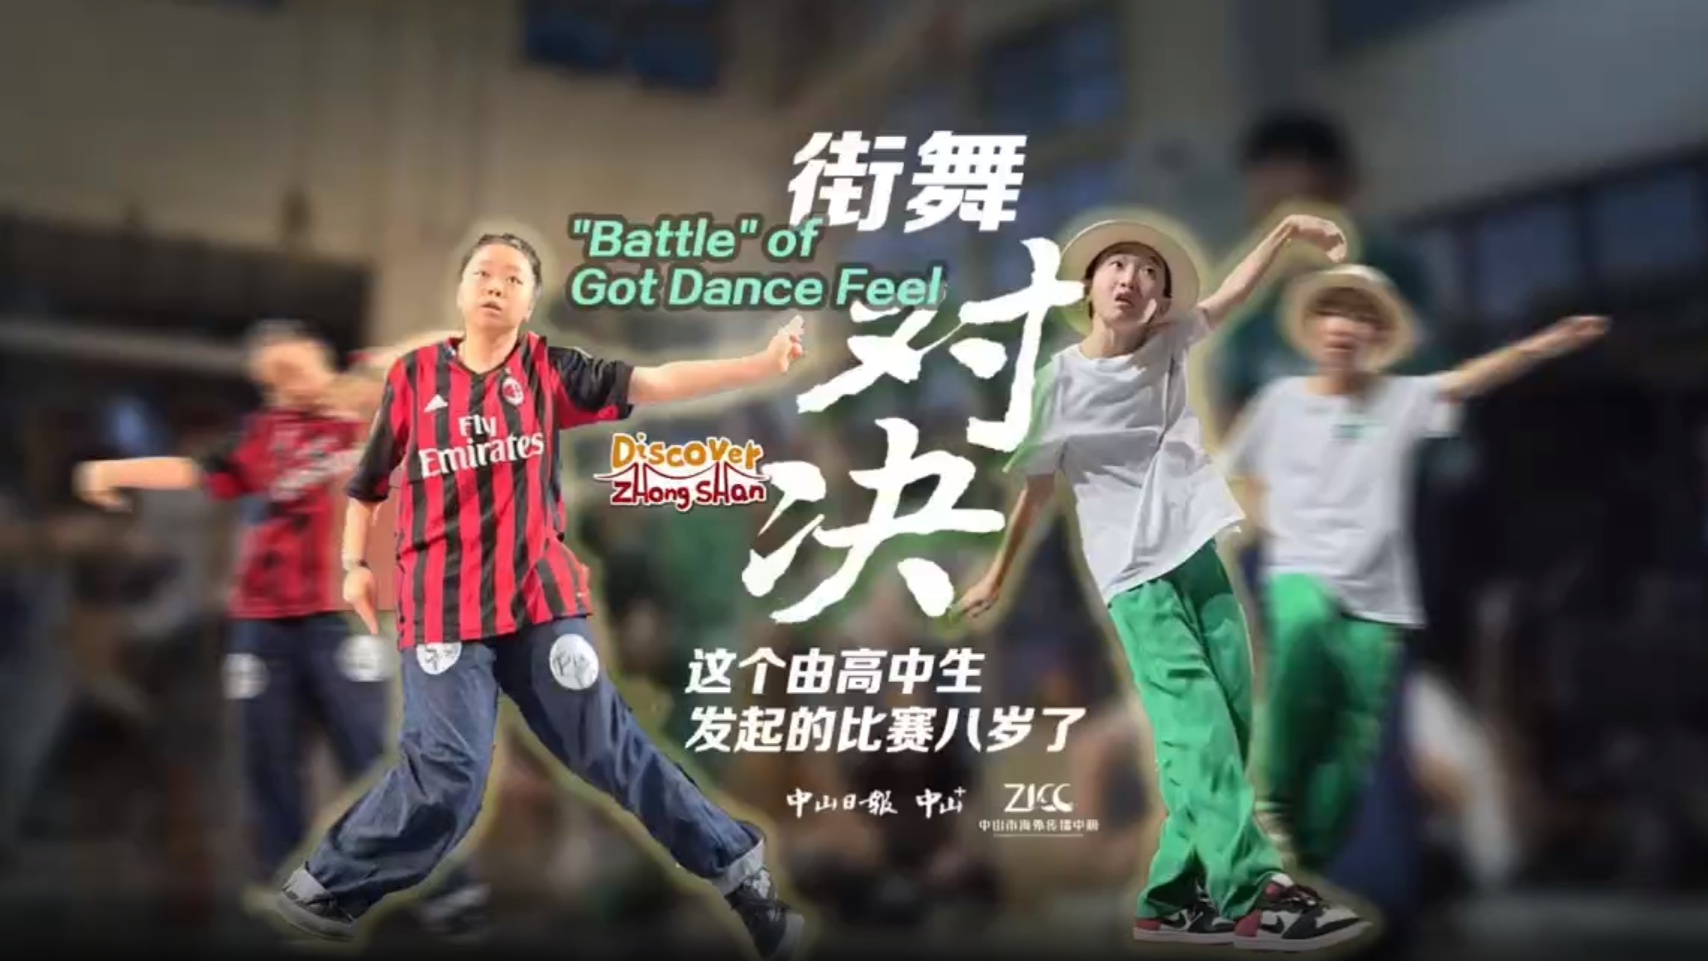 Discover Zhongshan ｜ Battle of got dance feel